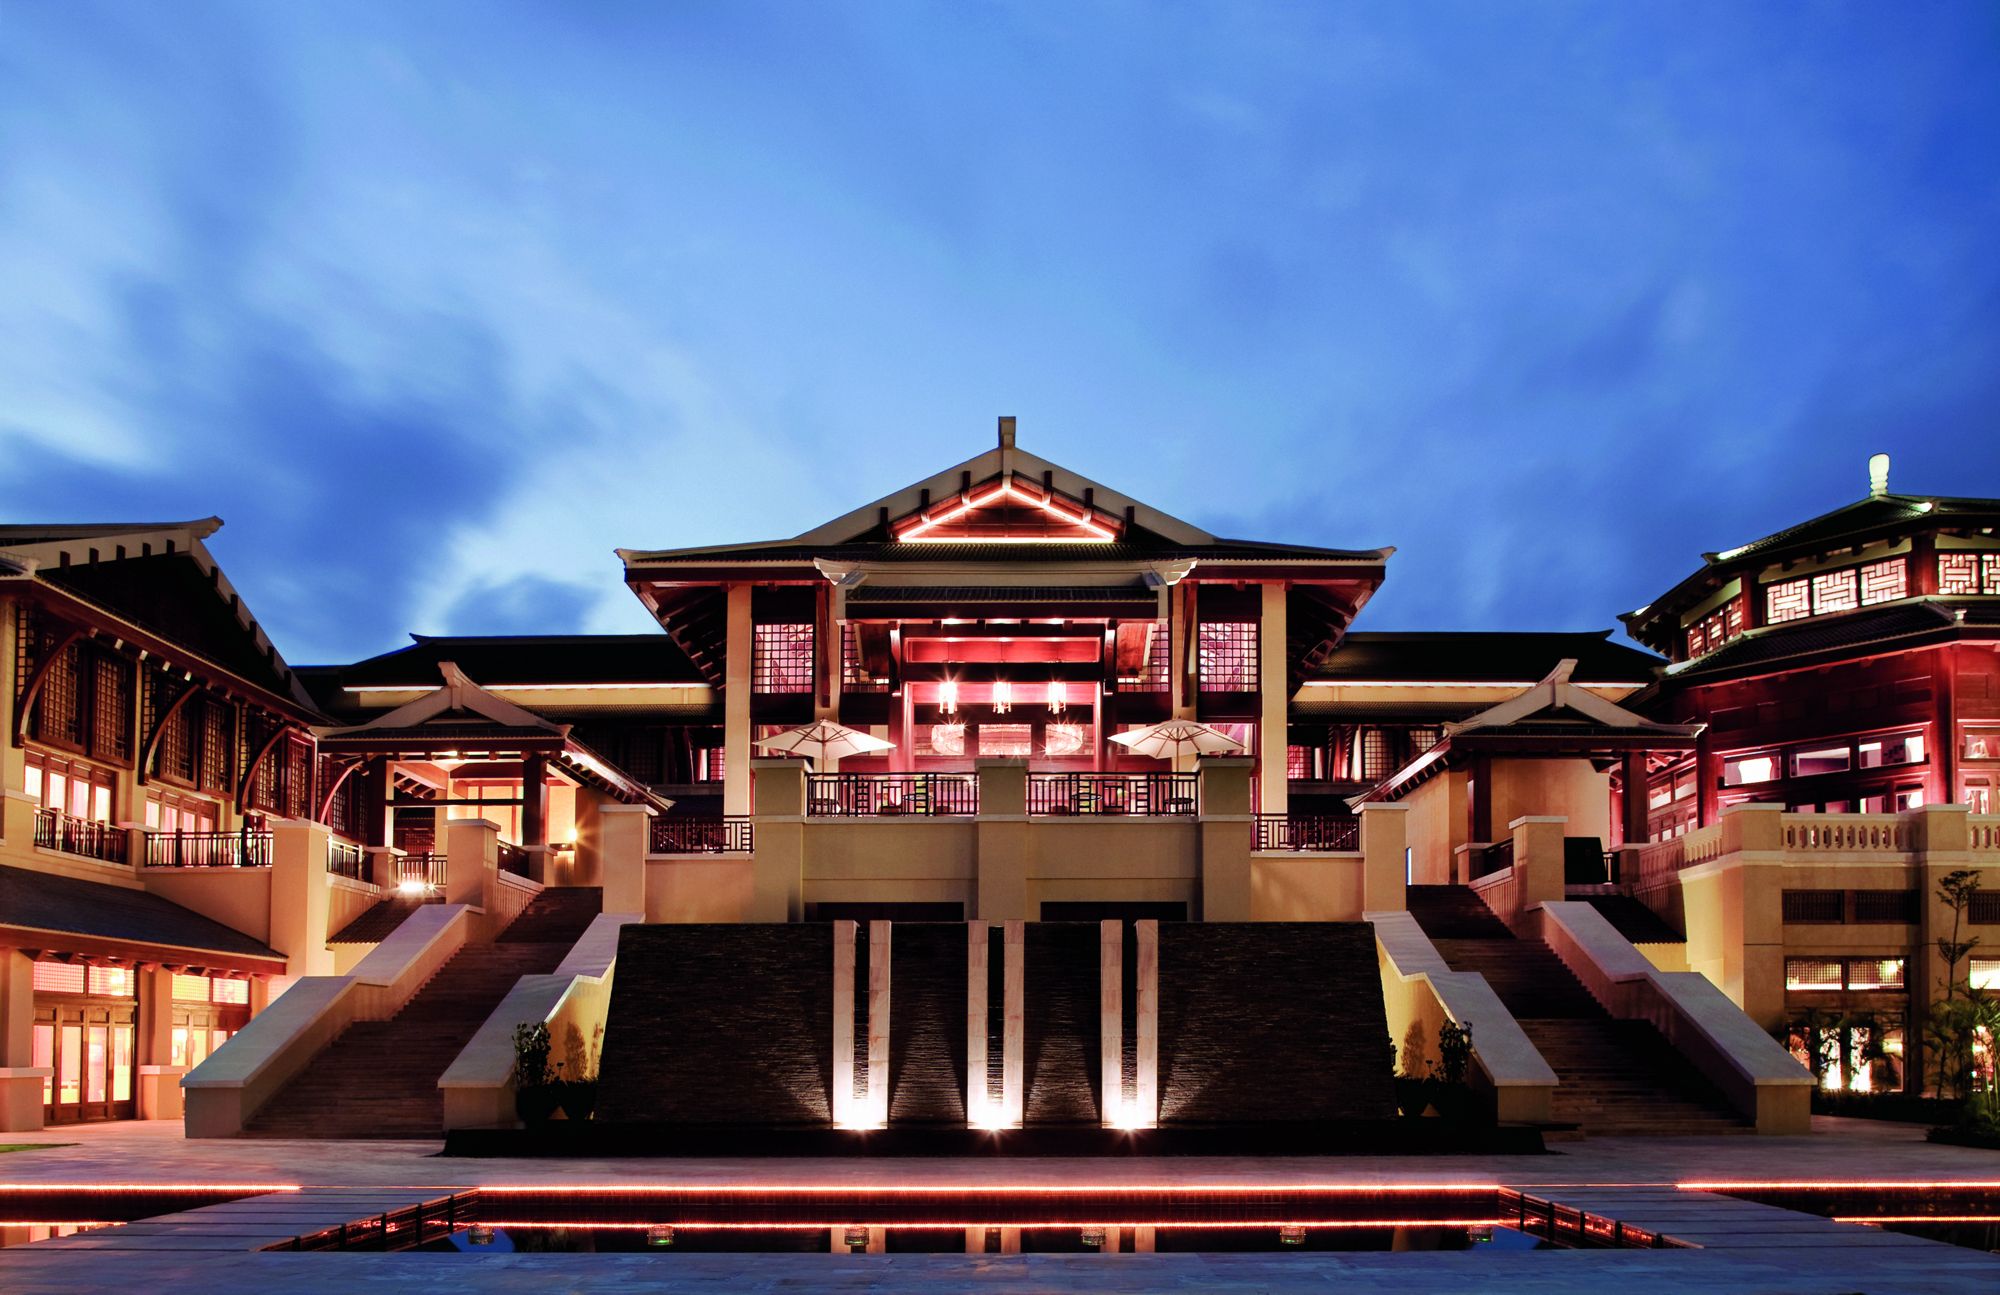 万豪计划在亚太地区新增约 100家酒店，半数位于中国